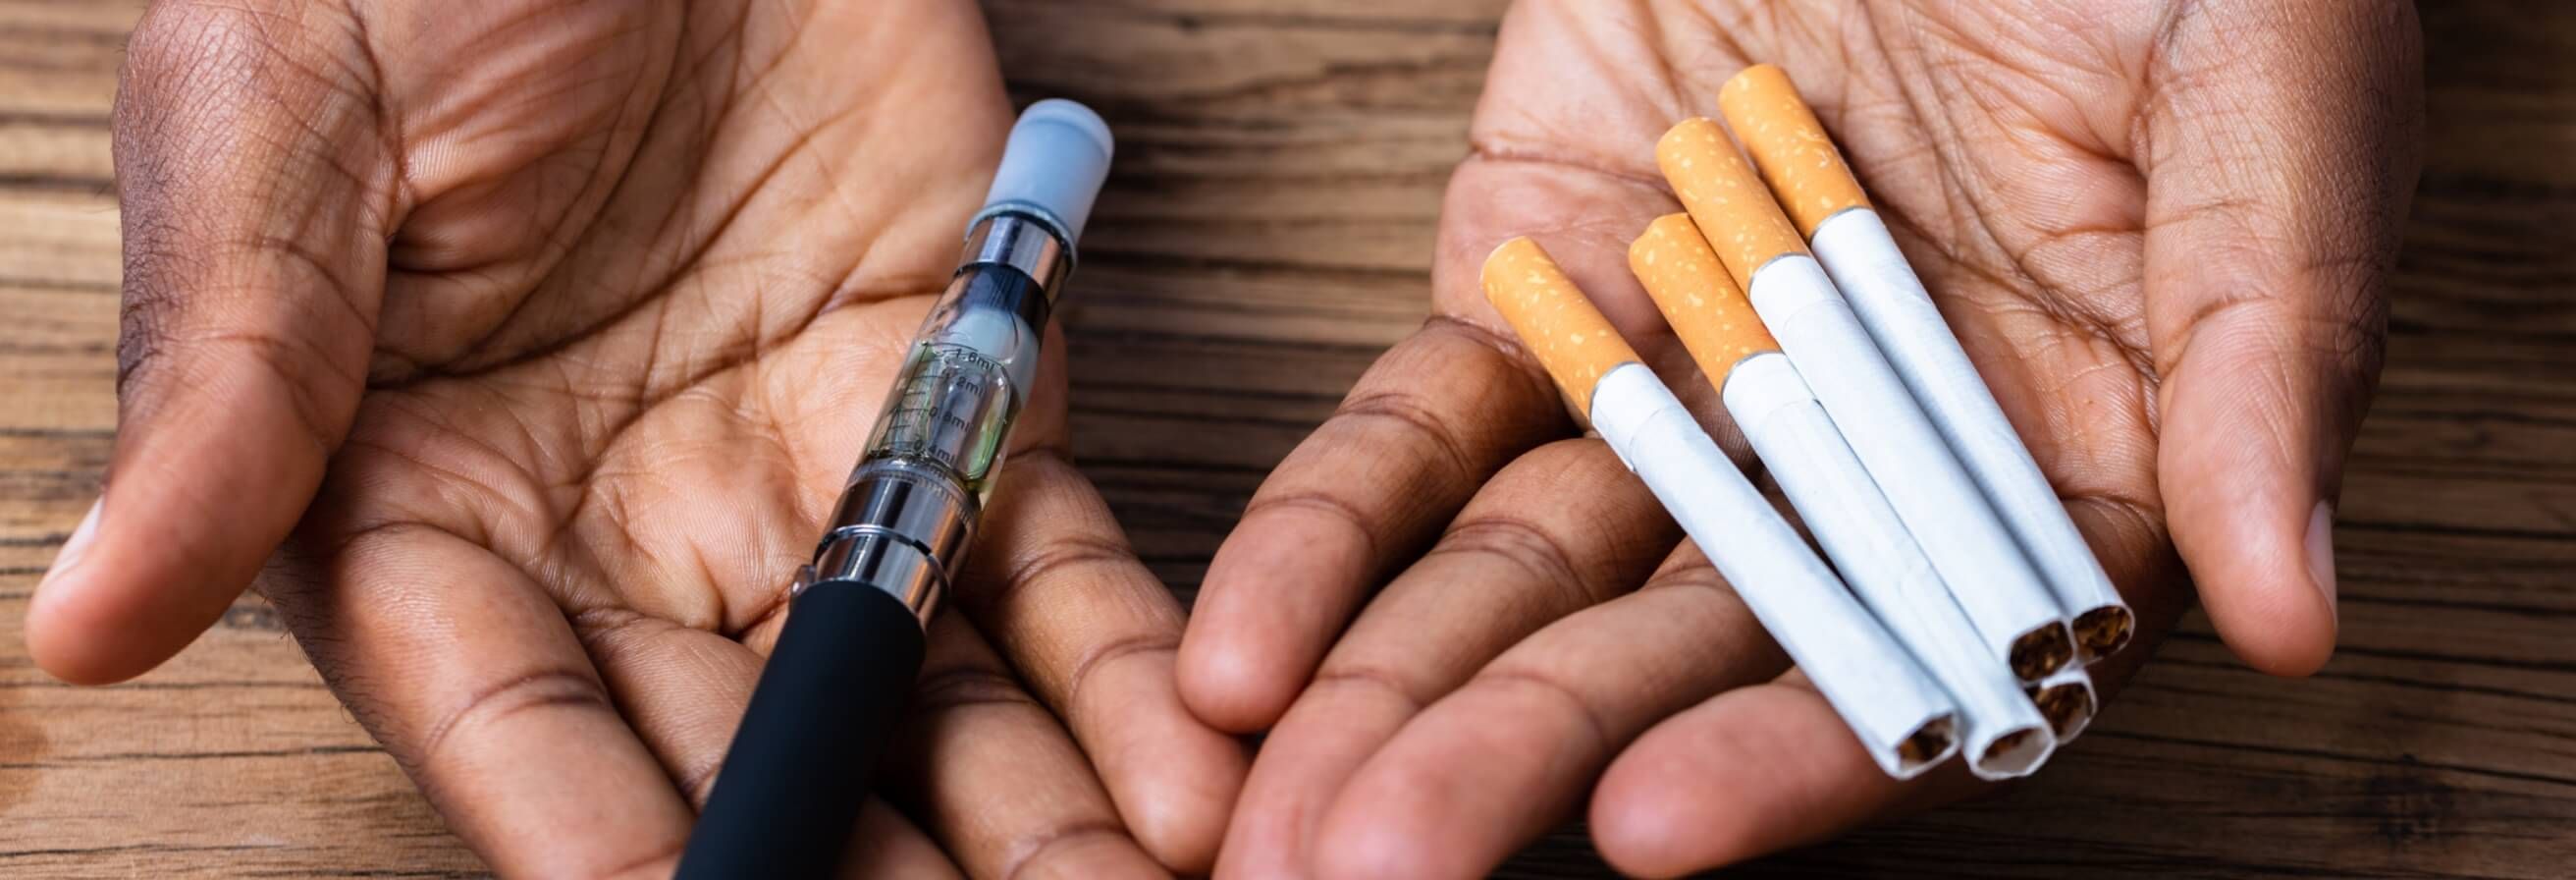 Πώς να Αντικαταστήσετε το Τσιγάρο, αλλά Όχι τη Νικοτίνη